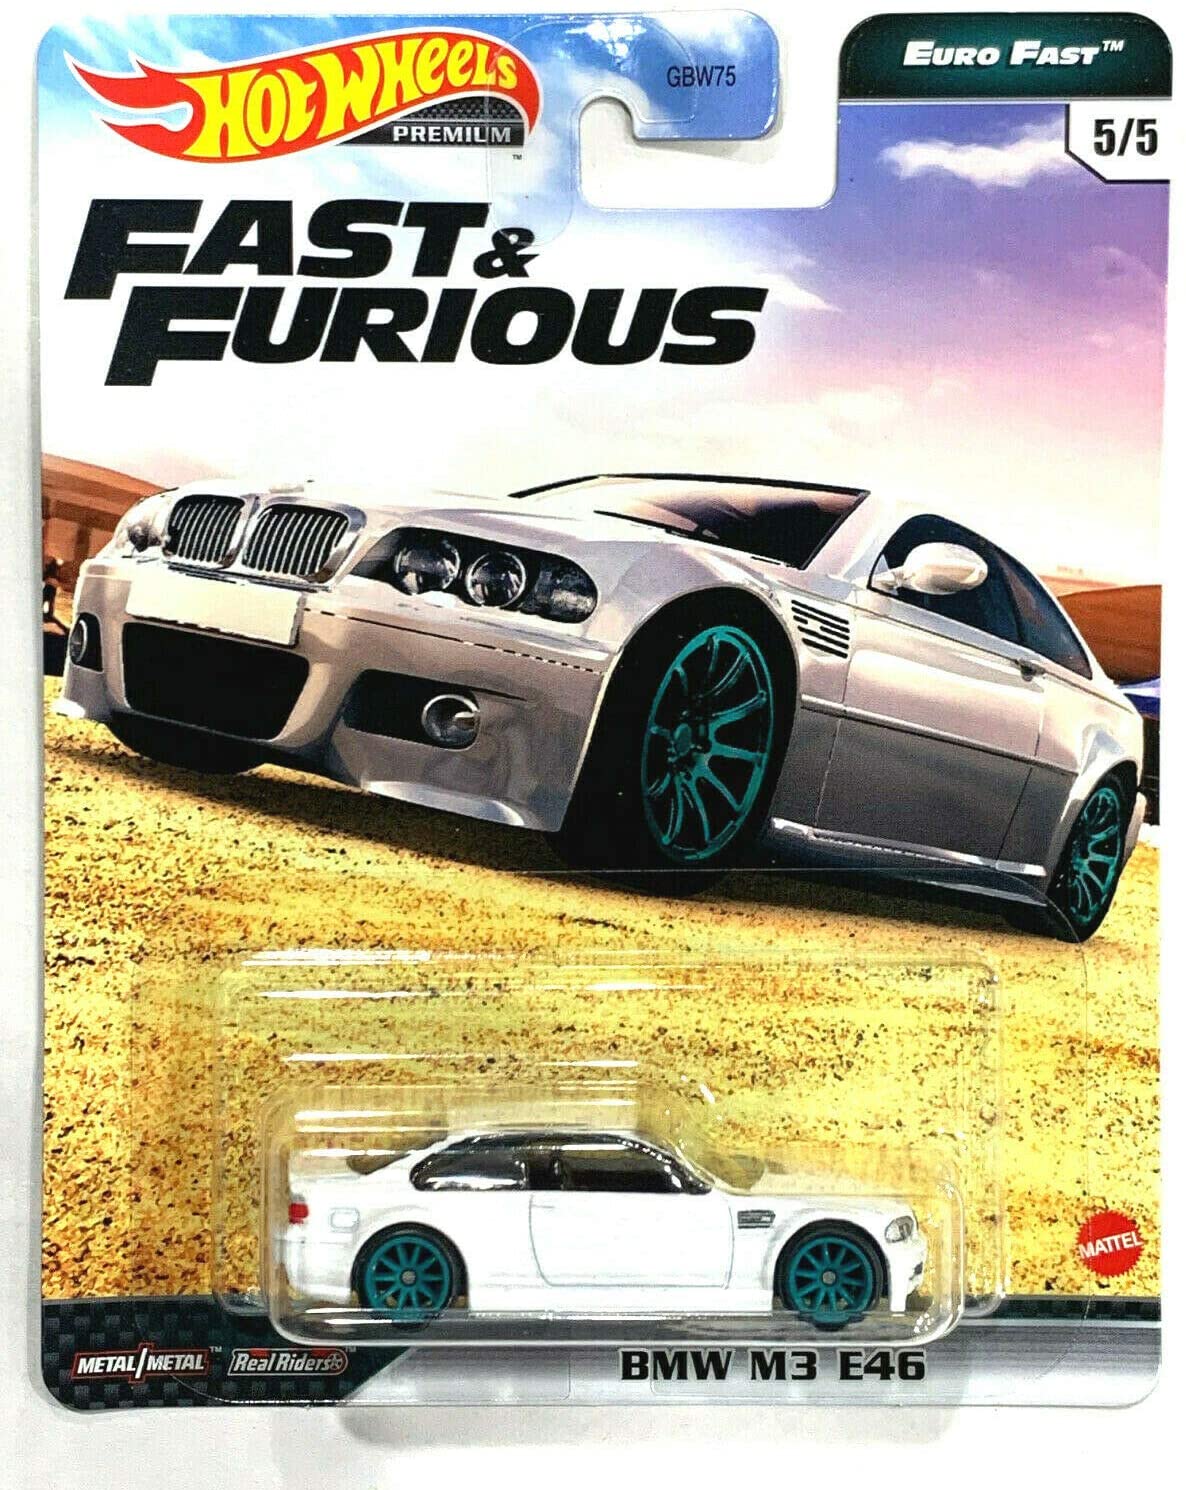 Fast & Furious Hot Wheels Premium Euro Fast 5/5 M3 E46 (B M W) White